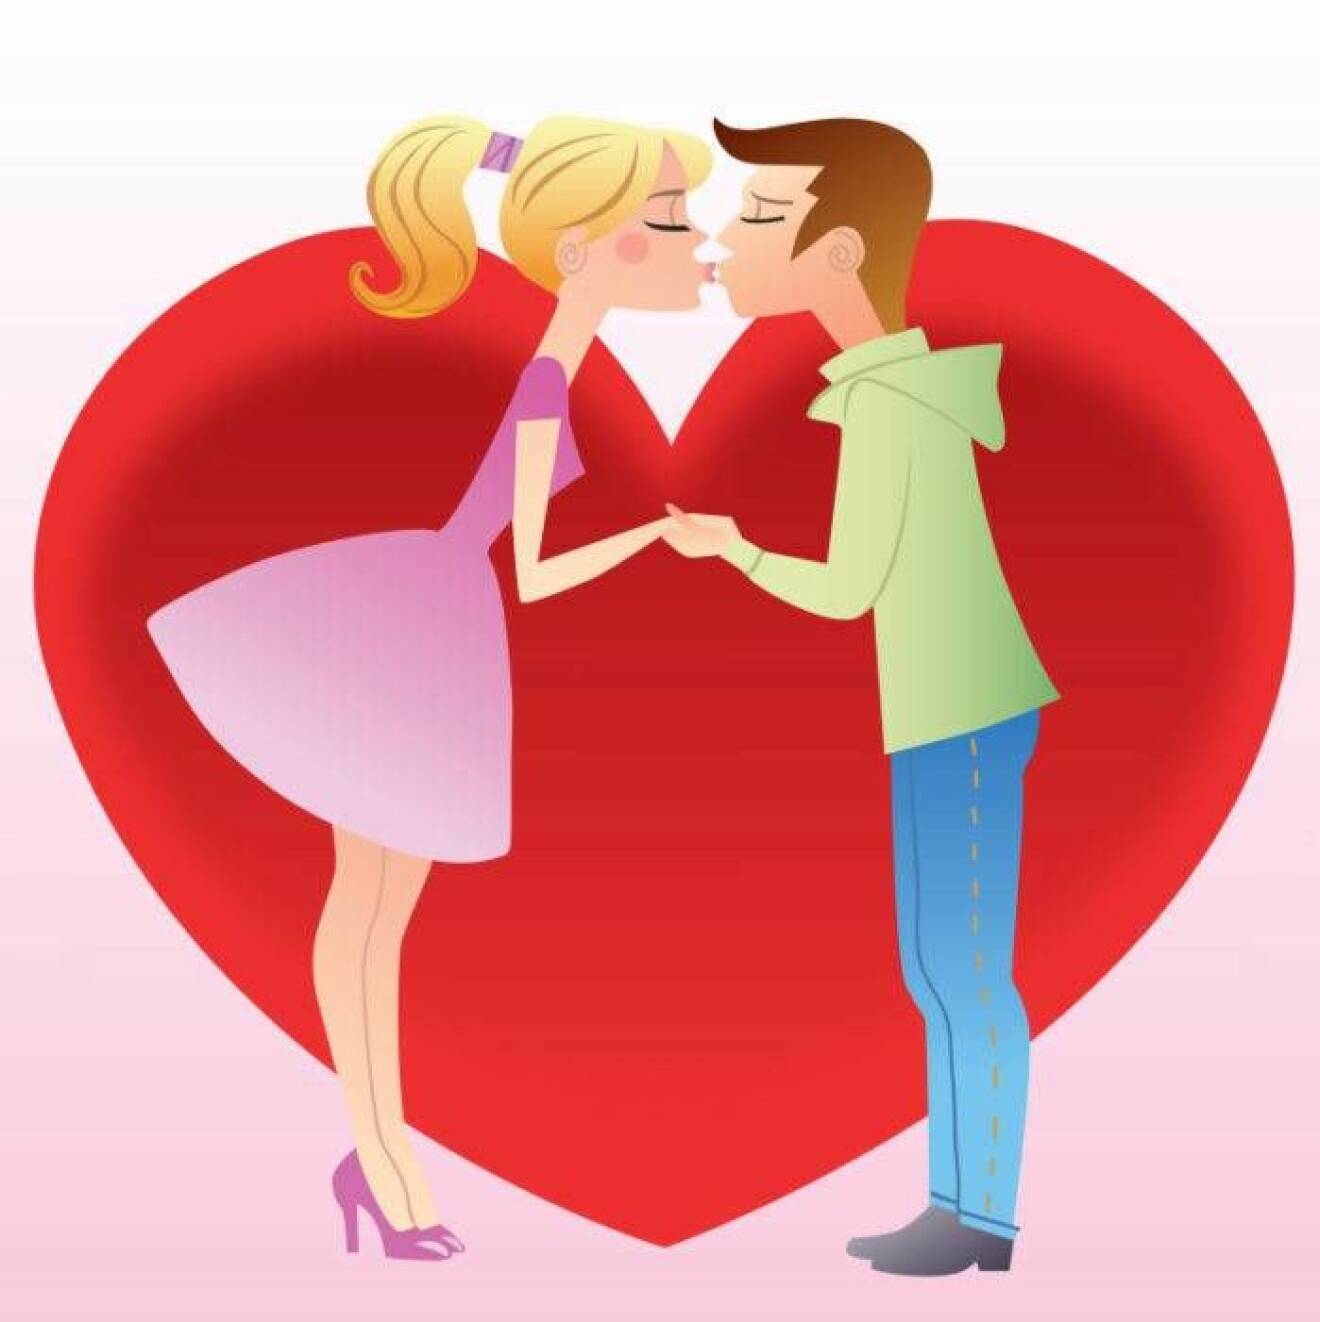 Teckning av kyssande par framför stort hjärta.